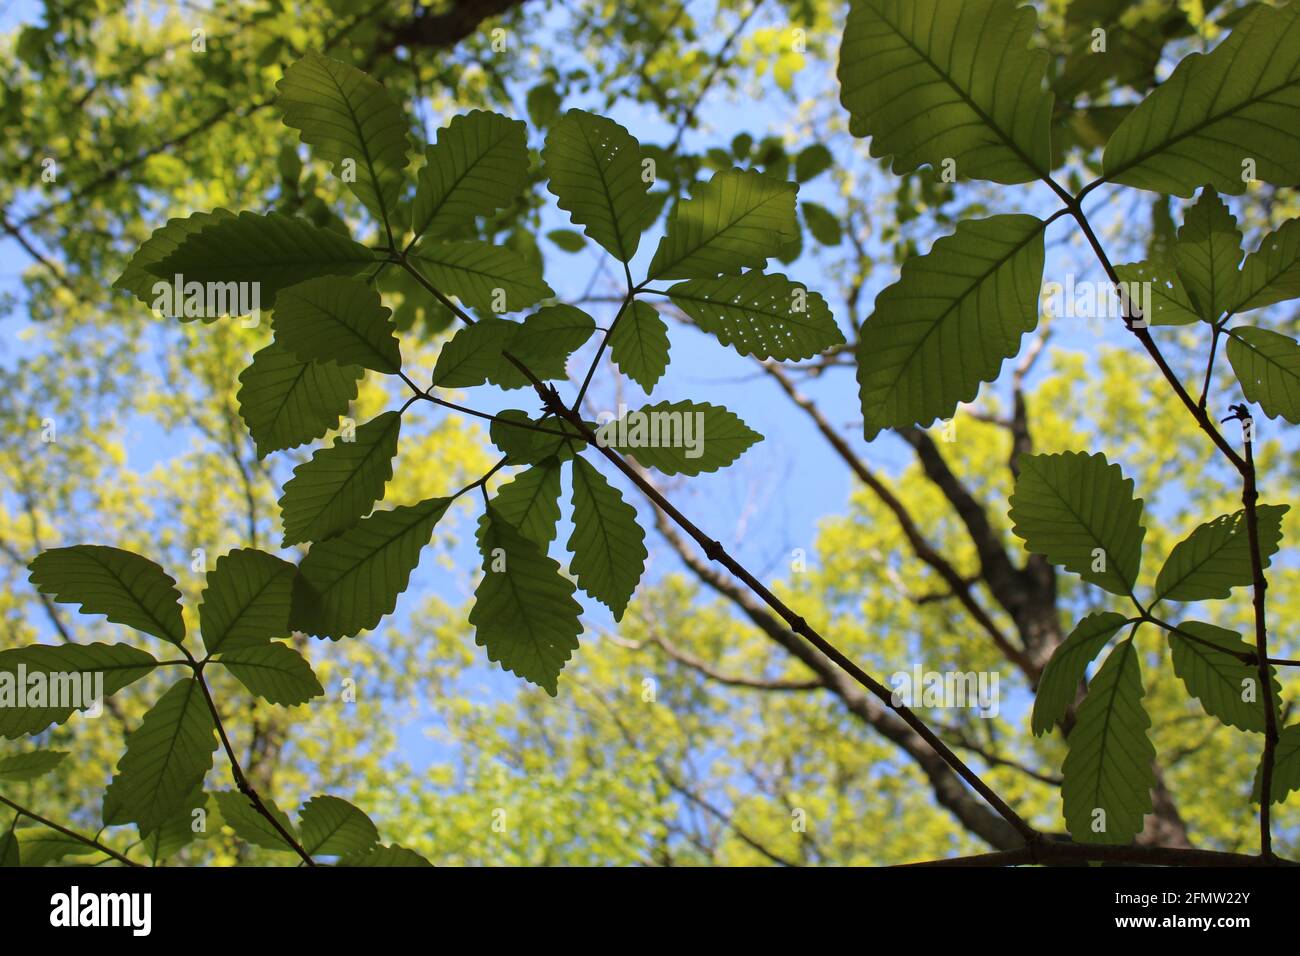 Swamp foglie di quercia castagno con buchi da danni Bug Foto Stock